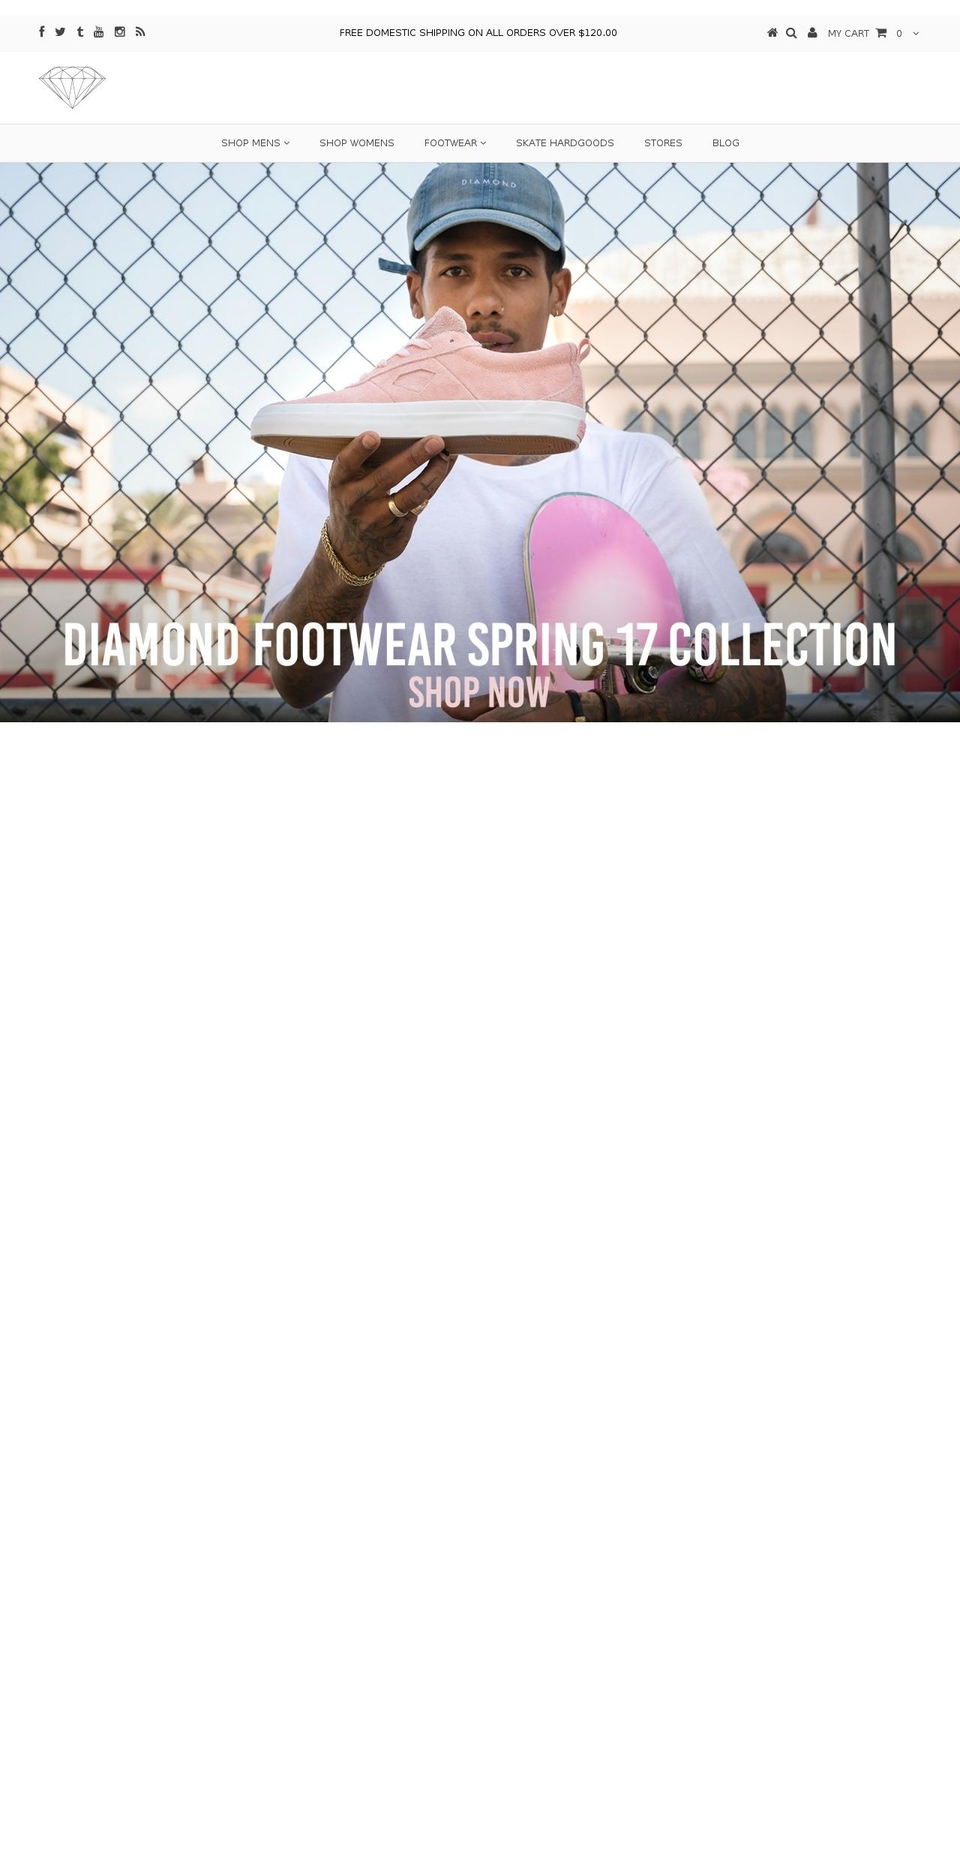 diamondsupplyco.com shopify website screenshot